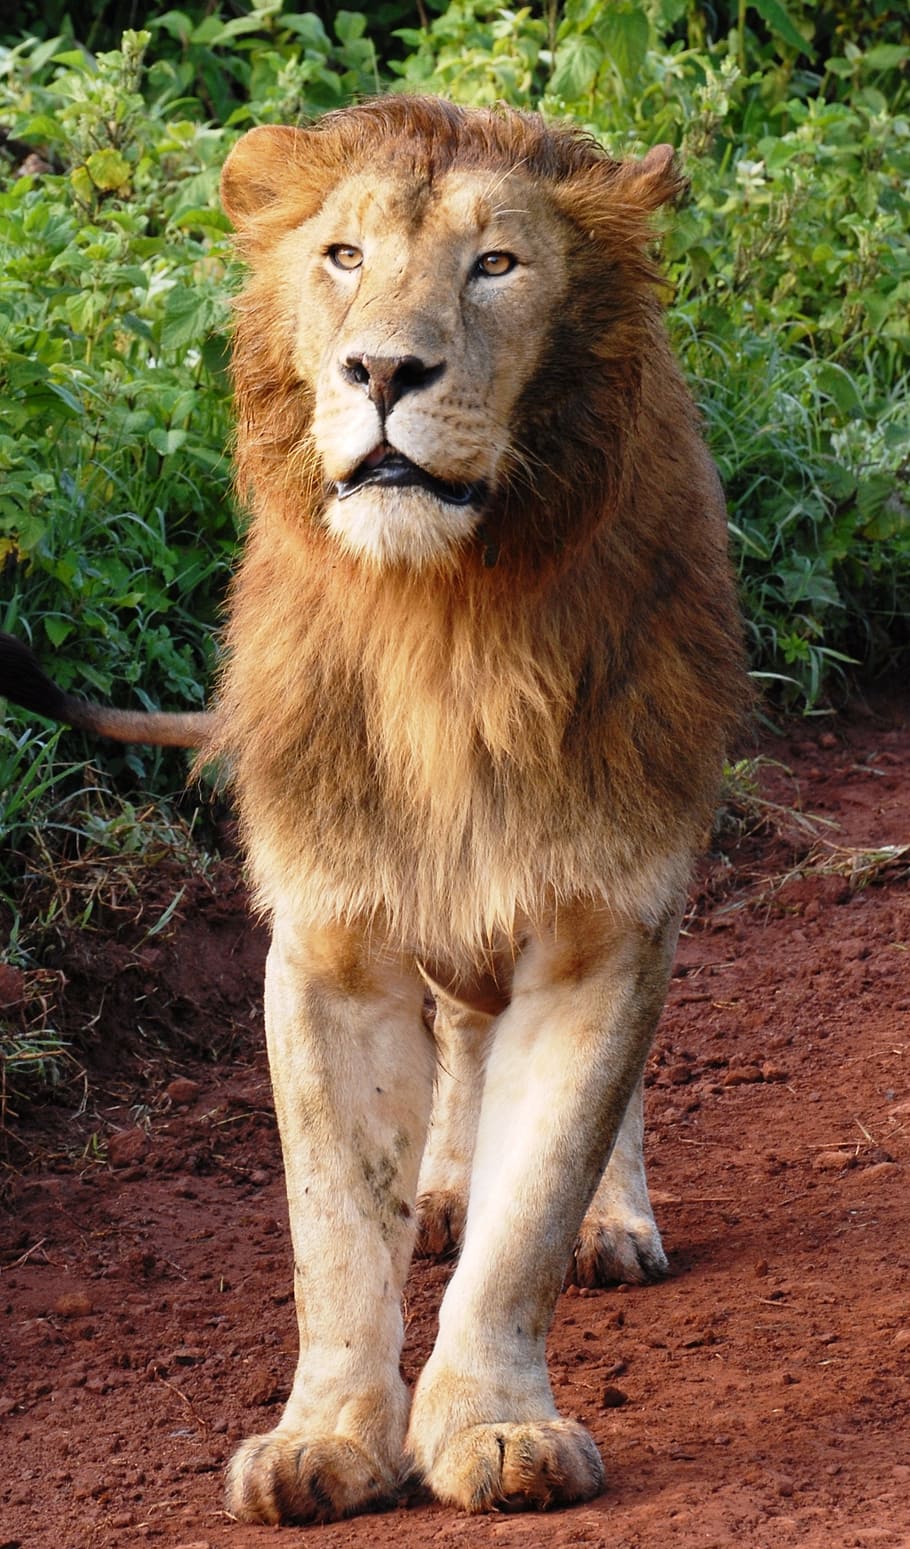 león adulto, en pie, marrón, suelo, durante el día, león, gato de rapiña, gato montés, safari, áfrica